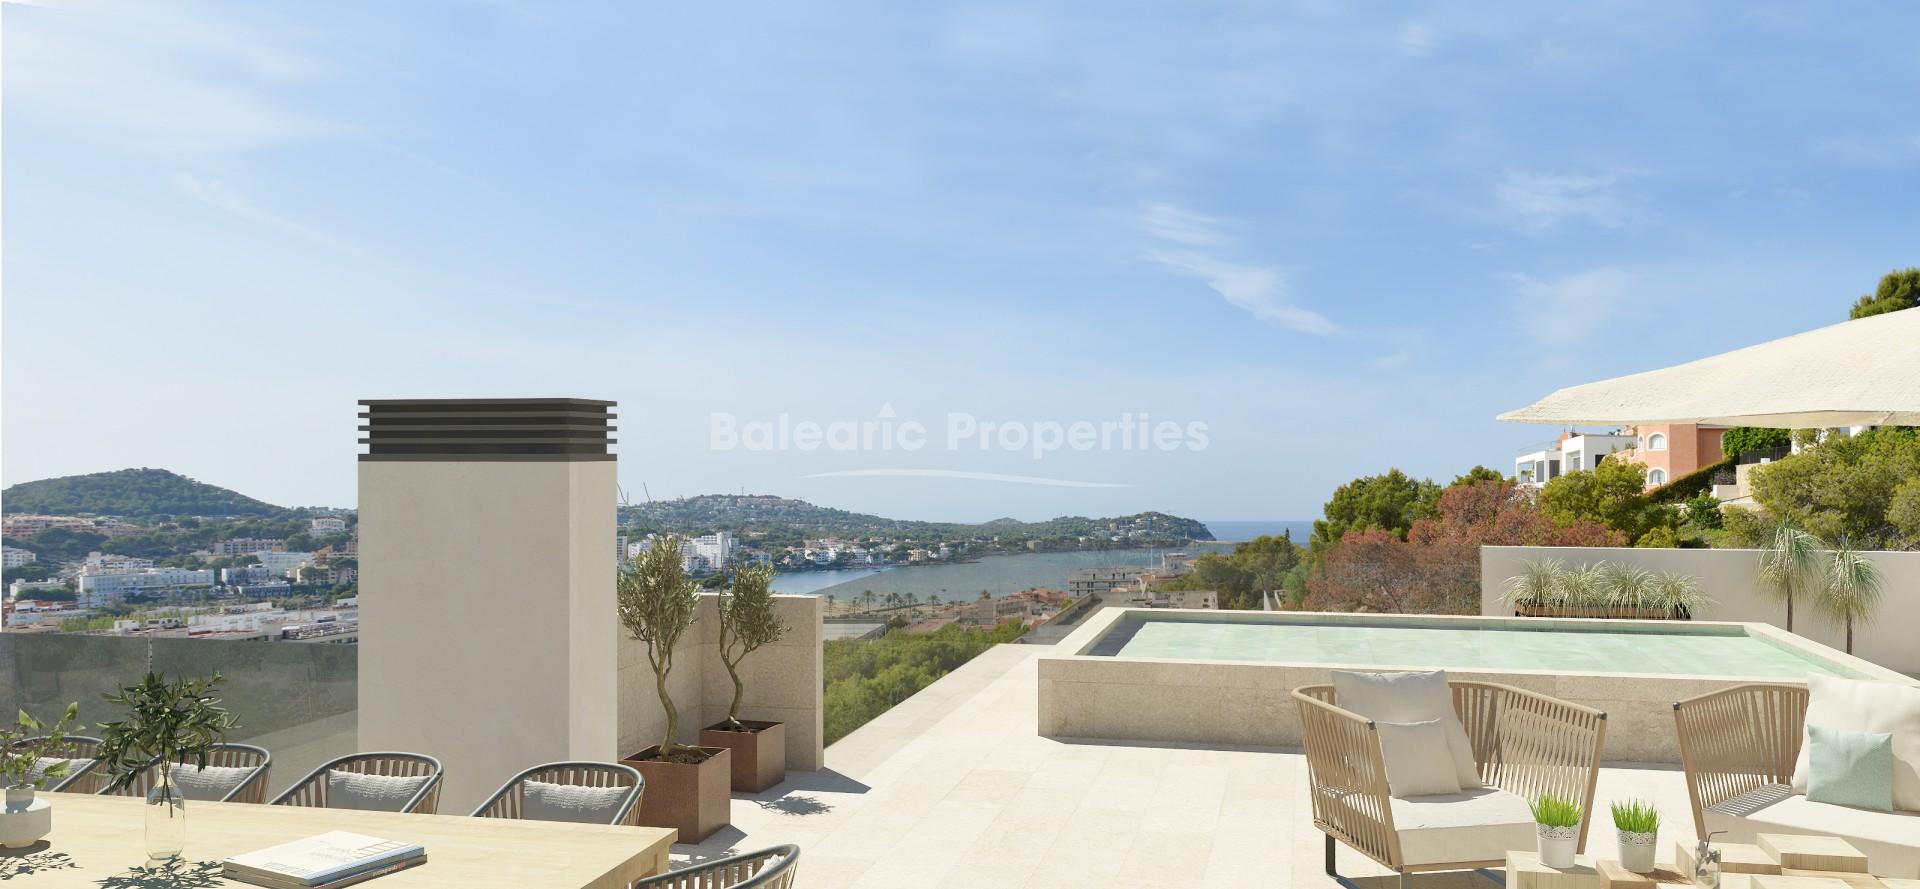 Ático de obra nueva con piscina privada y vistas al mar en venta en Santa Ponsa, Mallorca